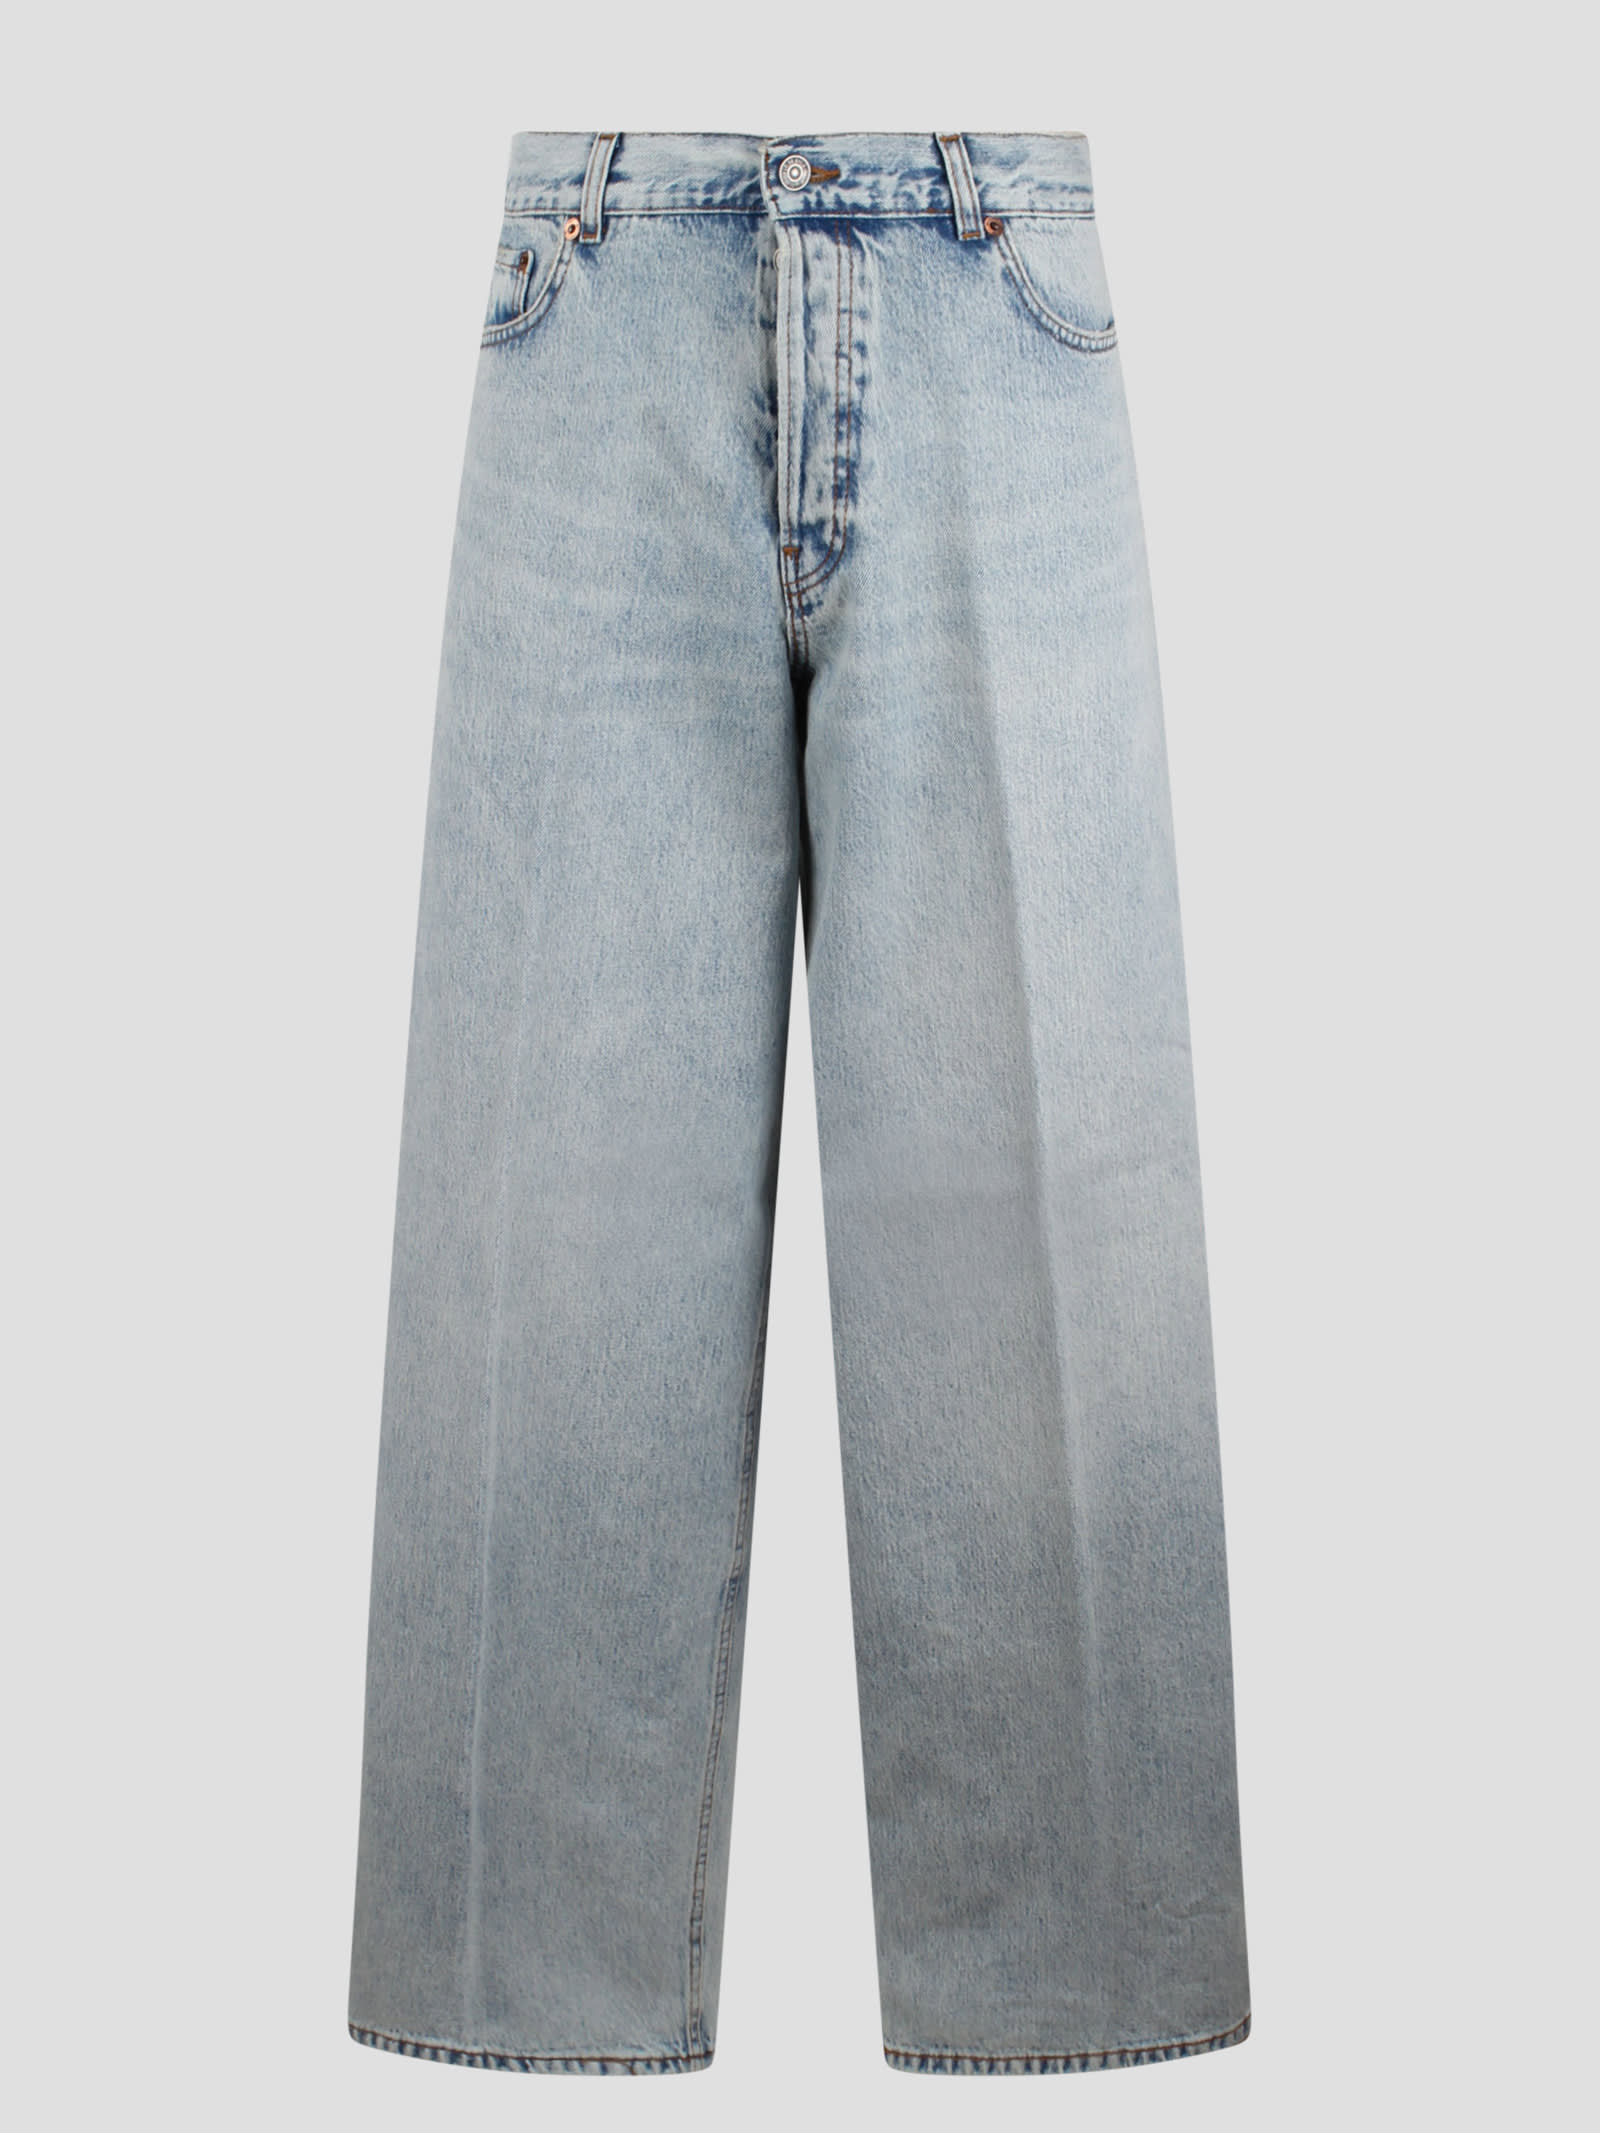 Bethany Stromboli Blue Jeans